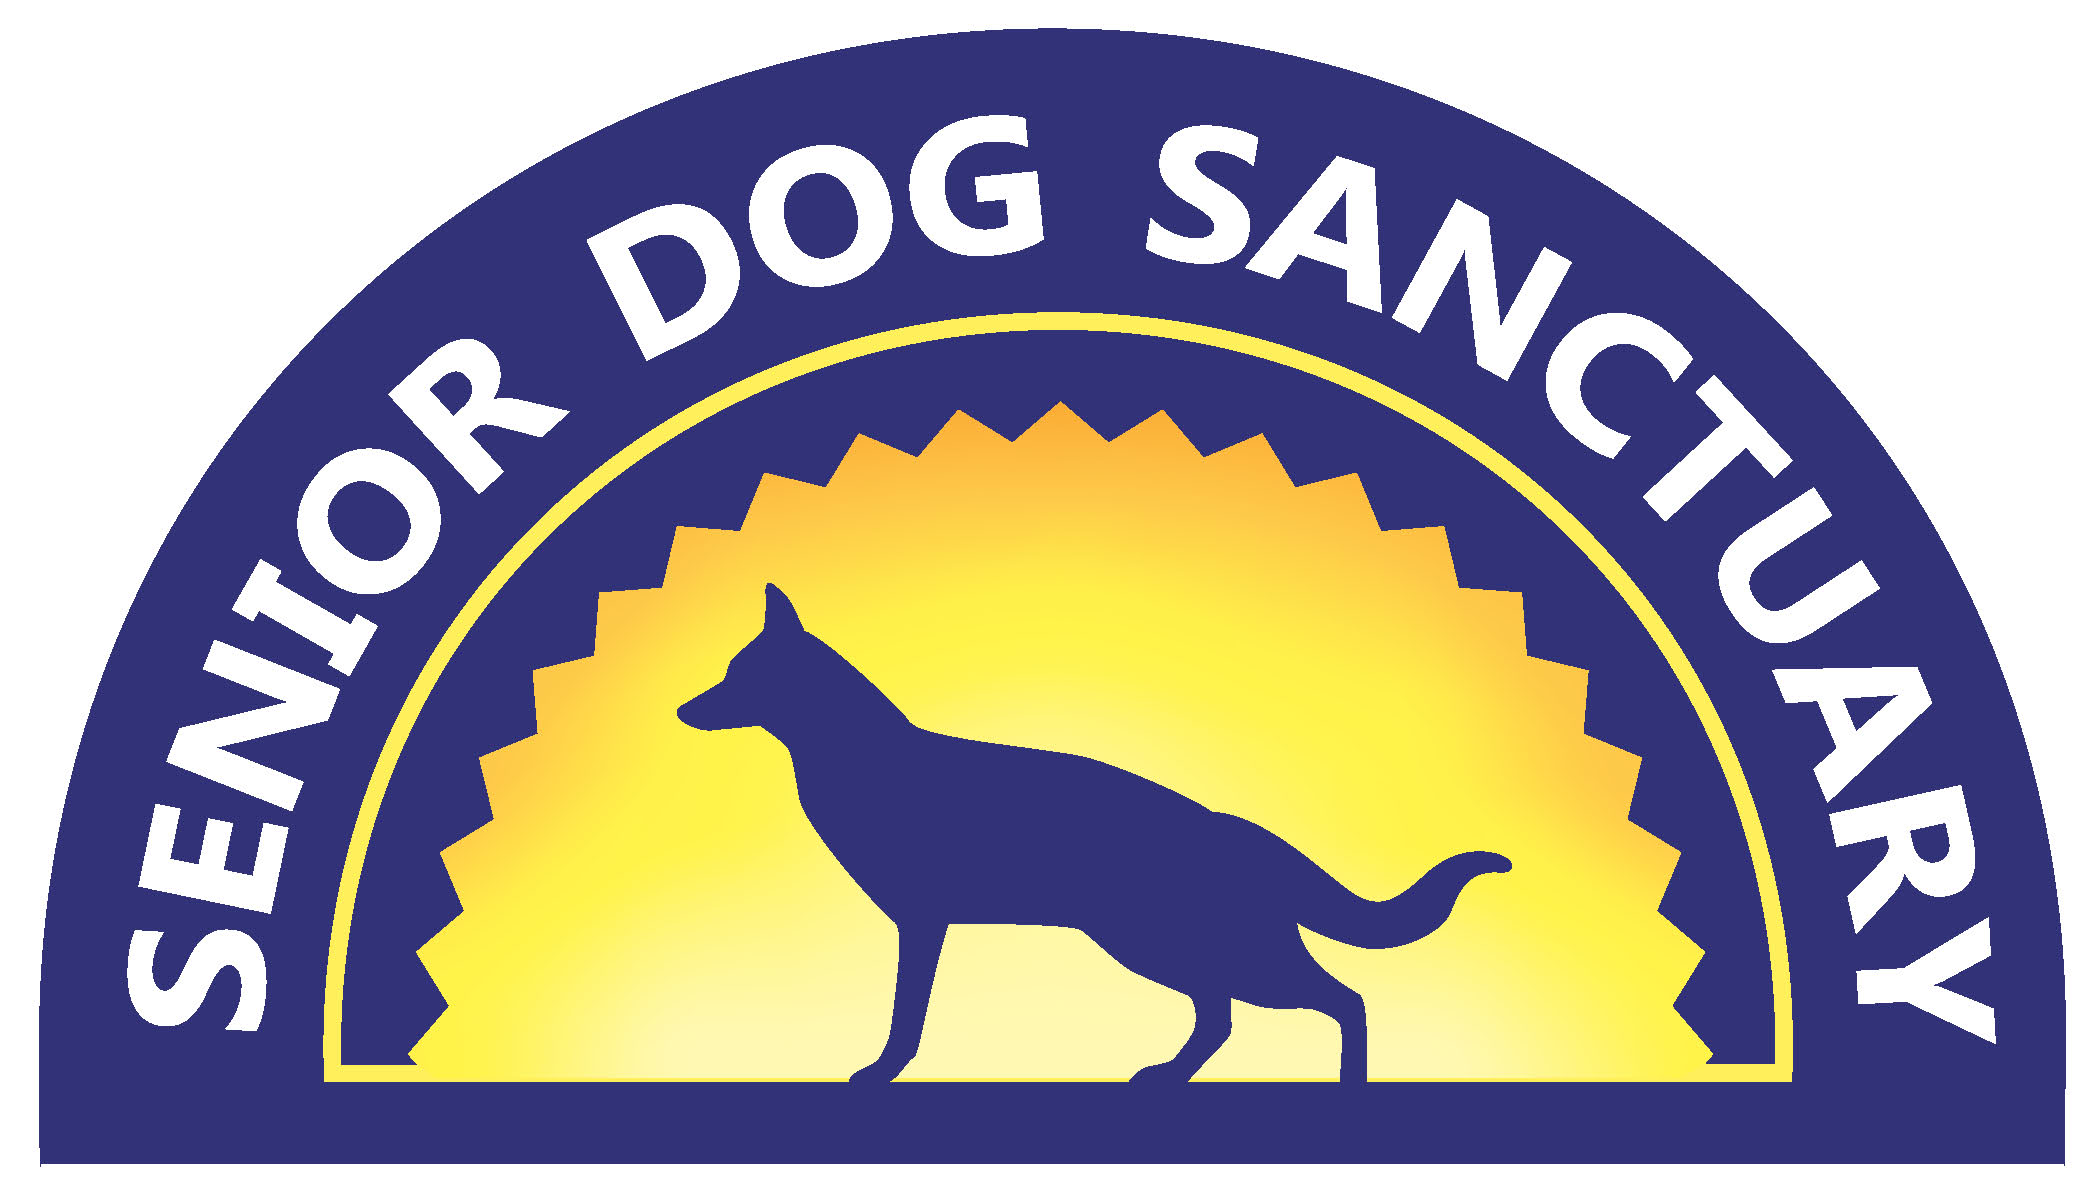 The Senior Dog Sanctuary of Maryland